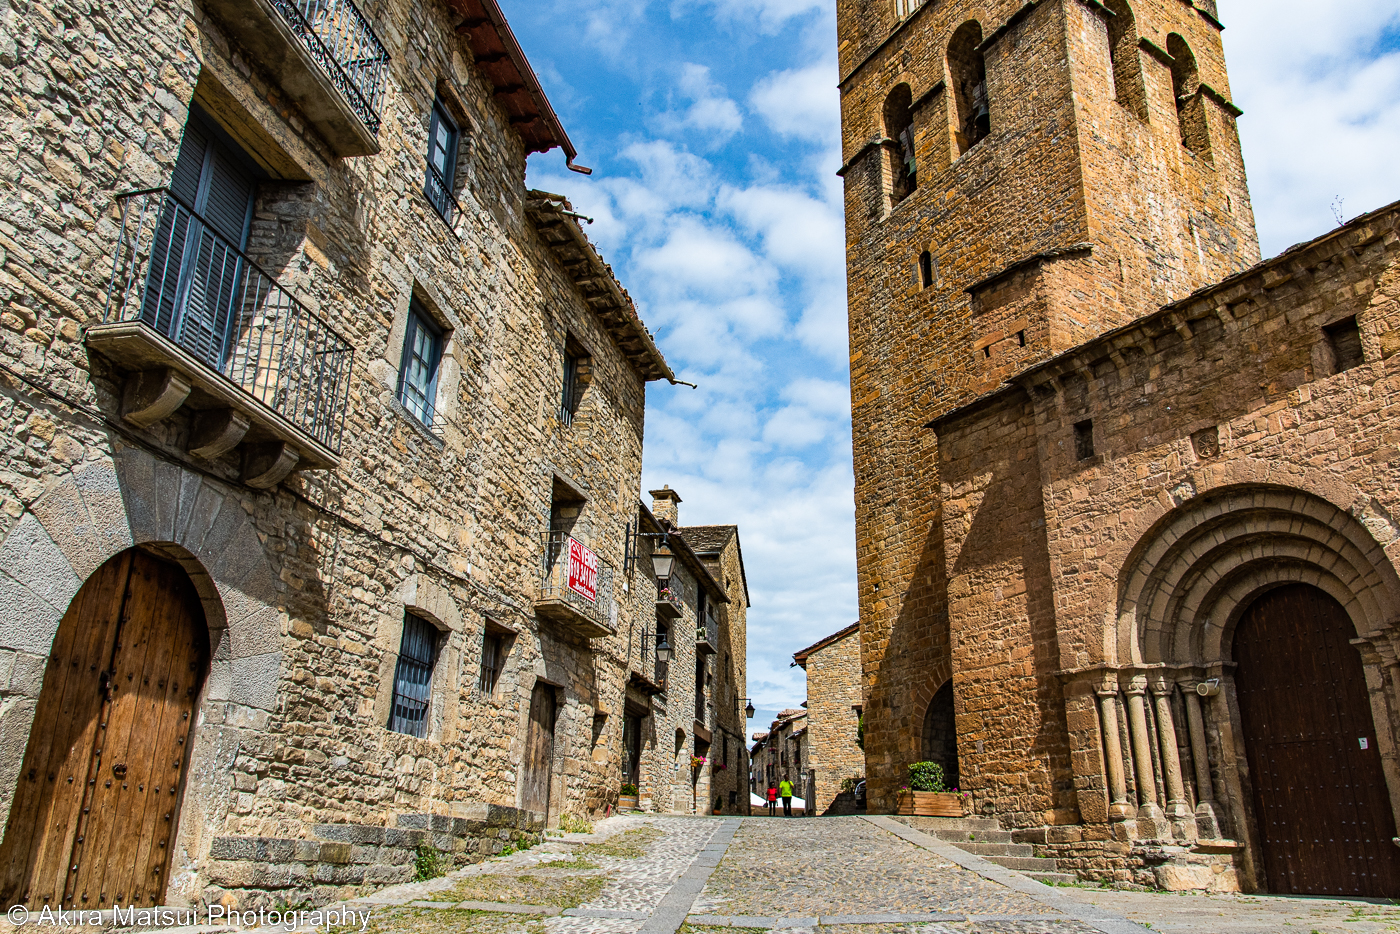 スペインで最も美しい村”アインサ村の街歩き | 風景写真家・松井章のブログ